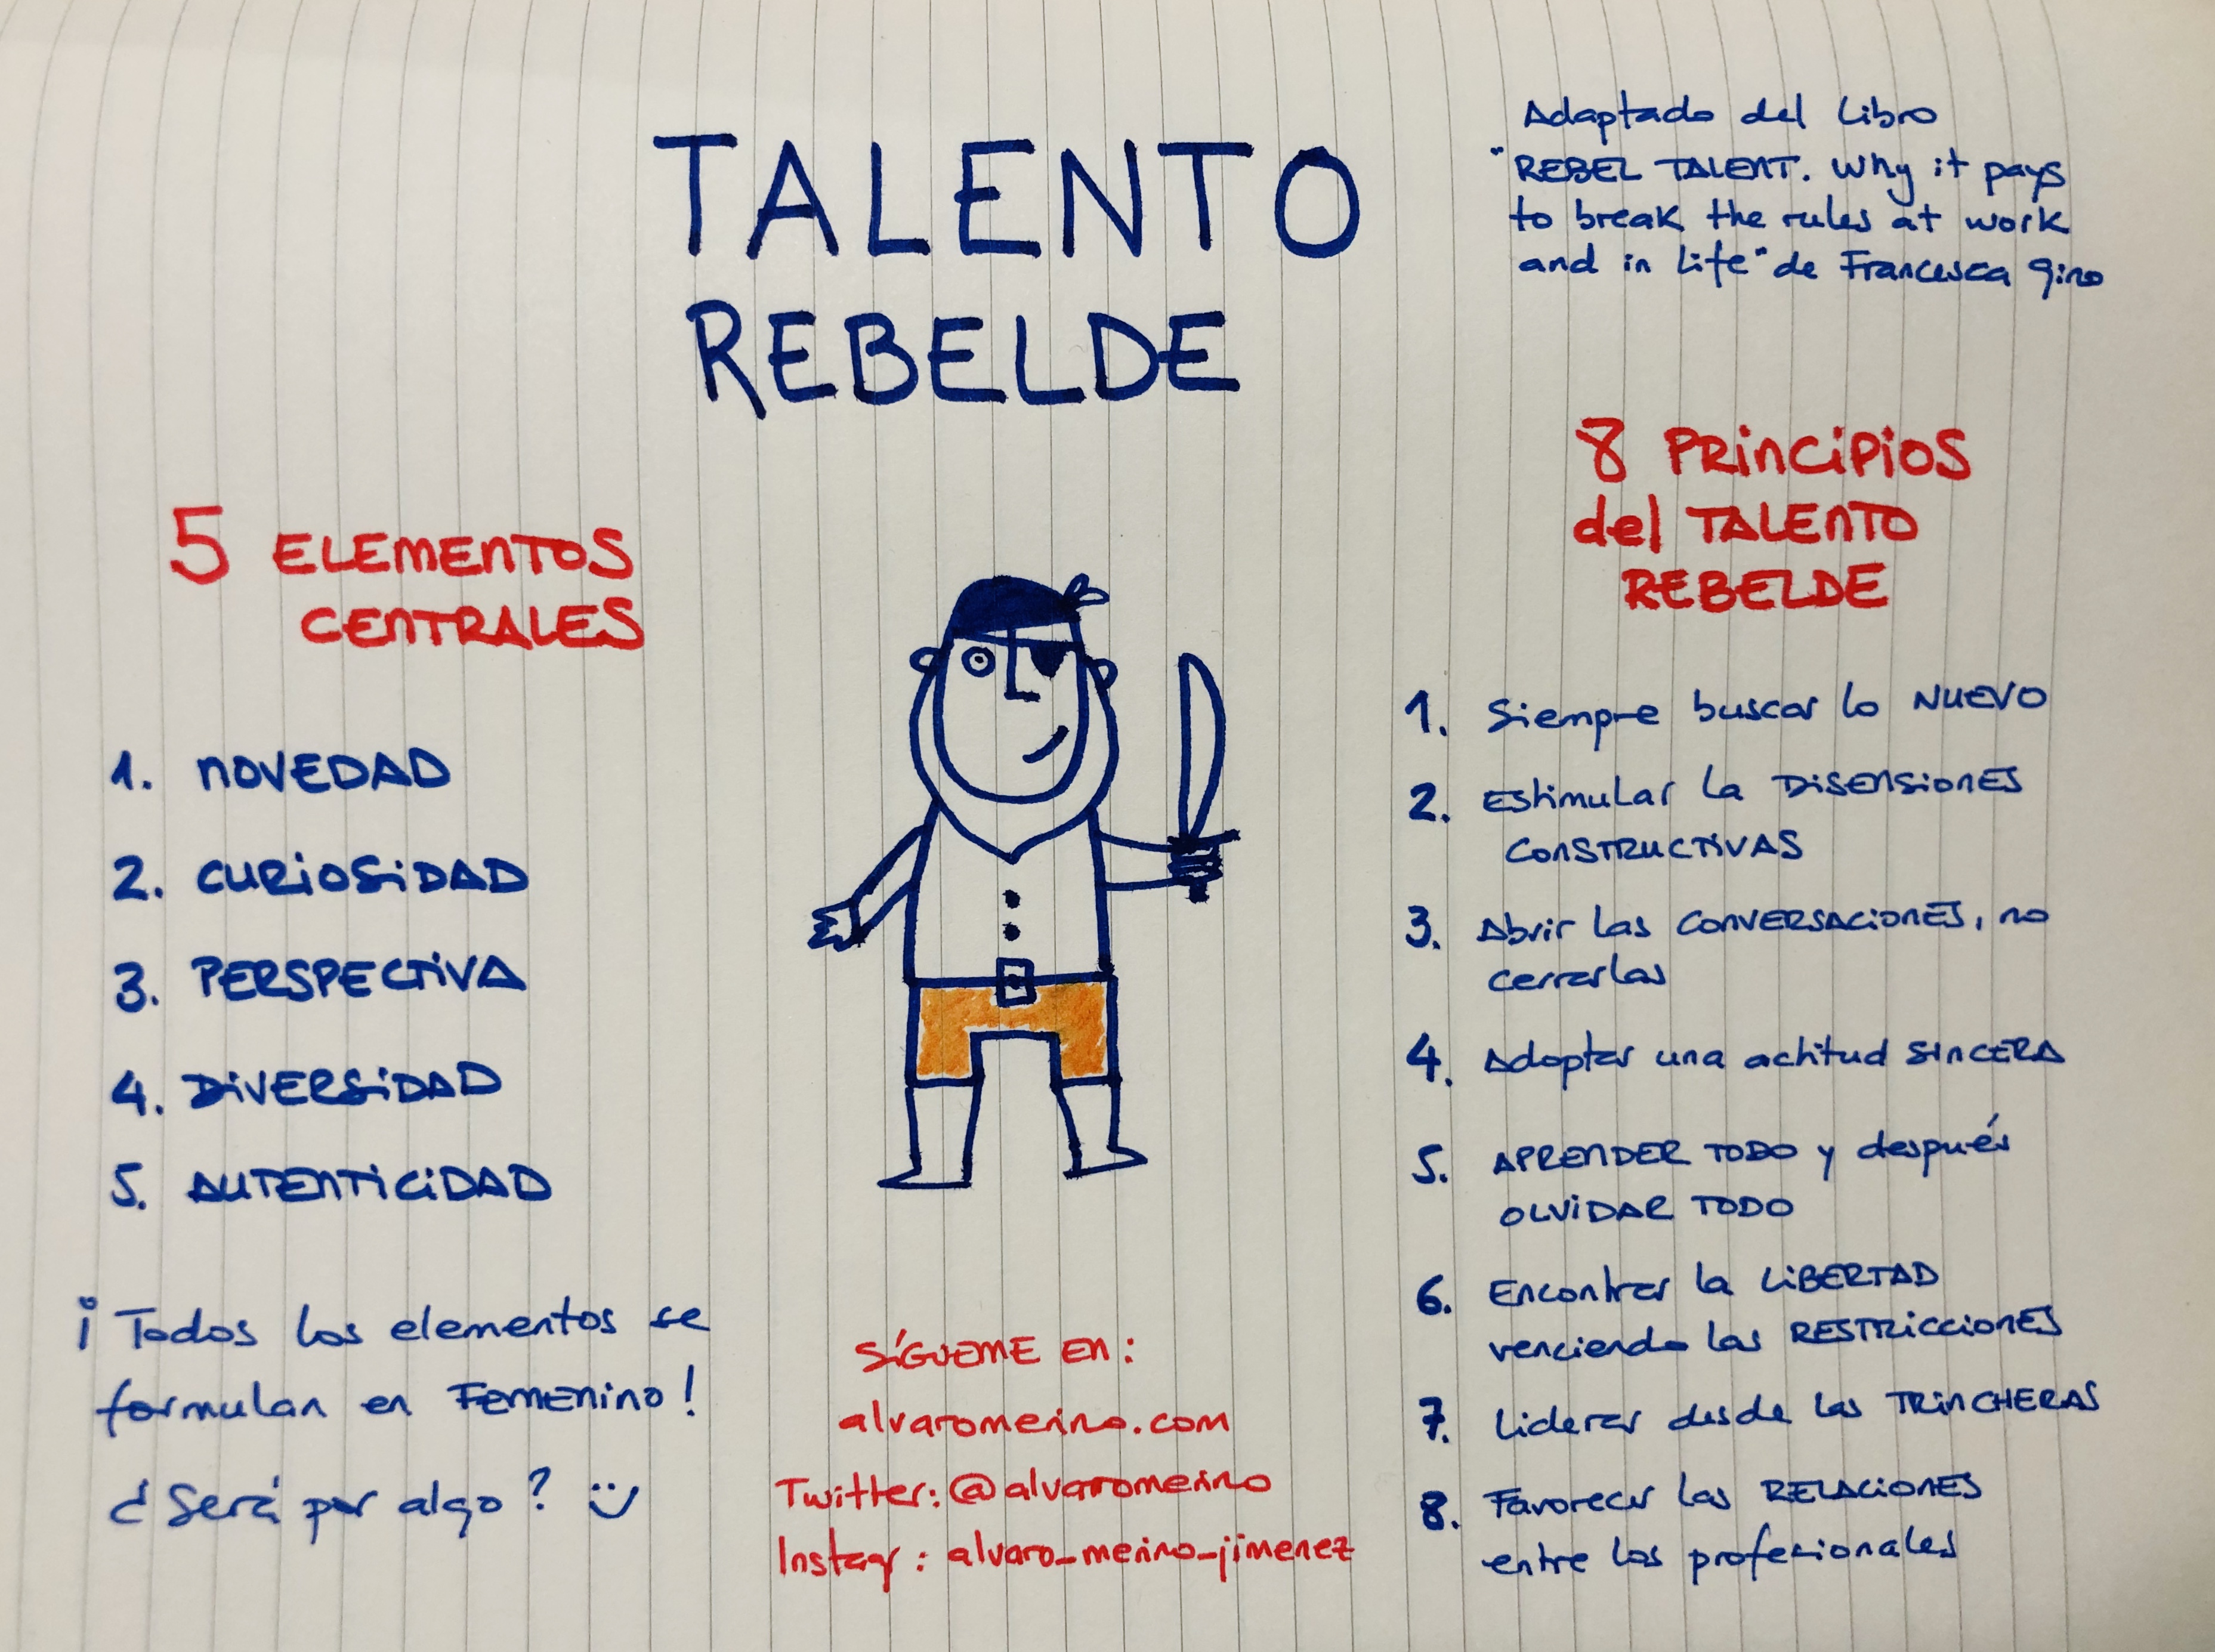 Los 8 principios del talento rebelde